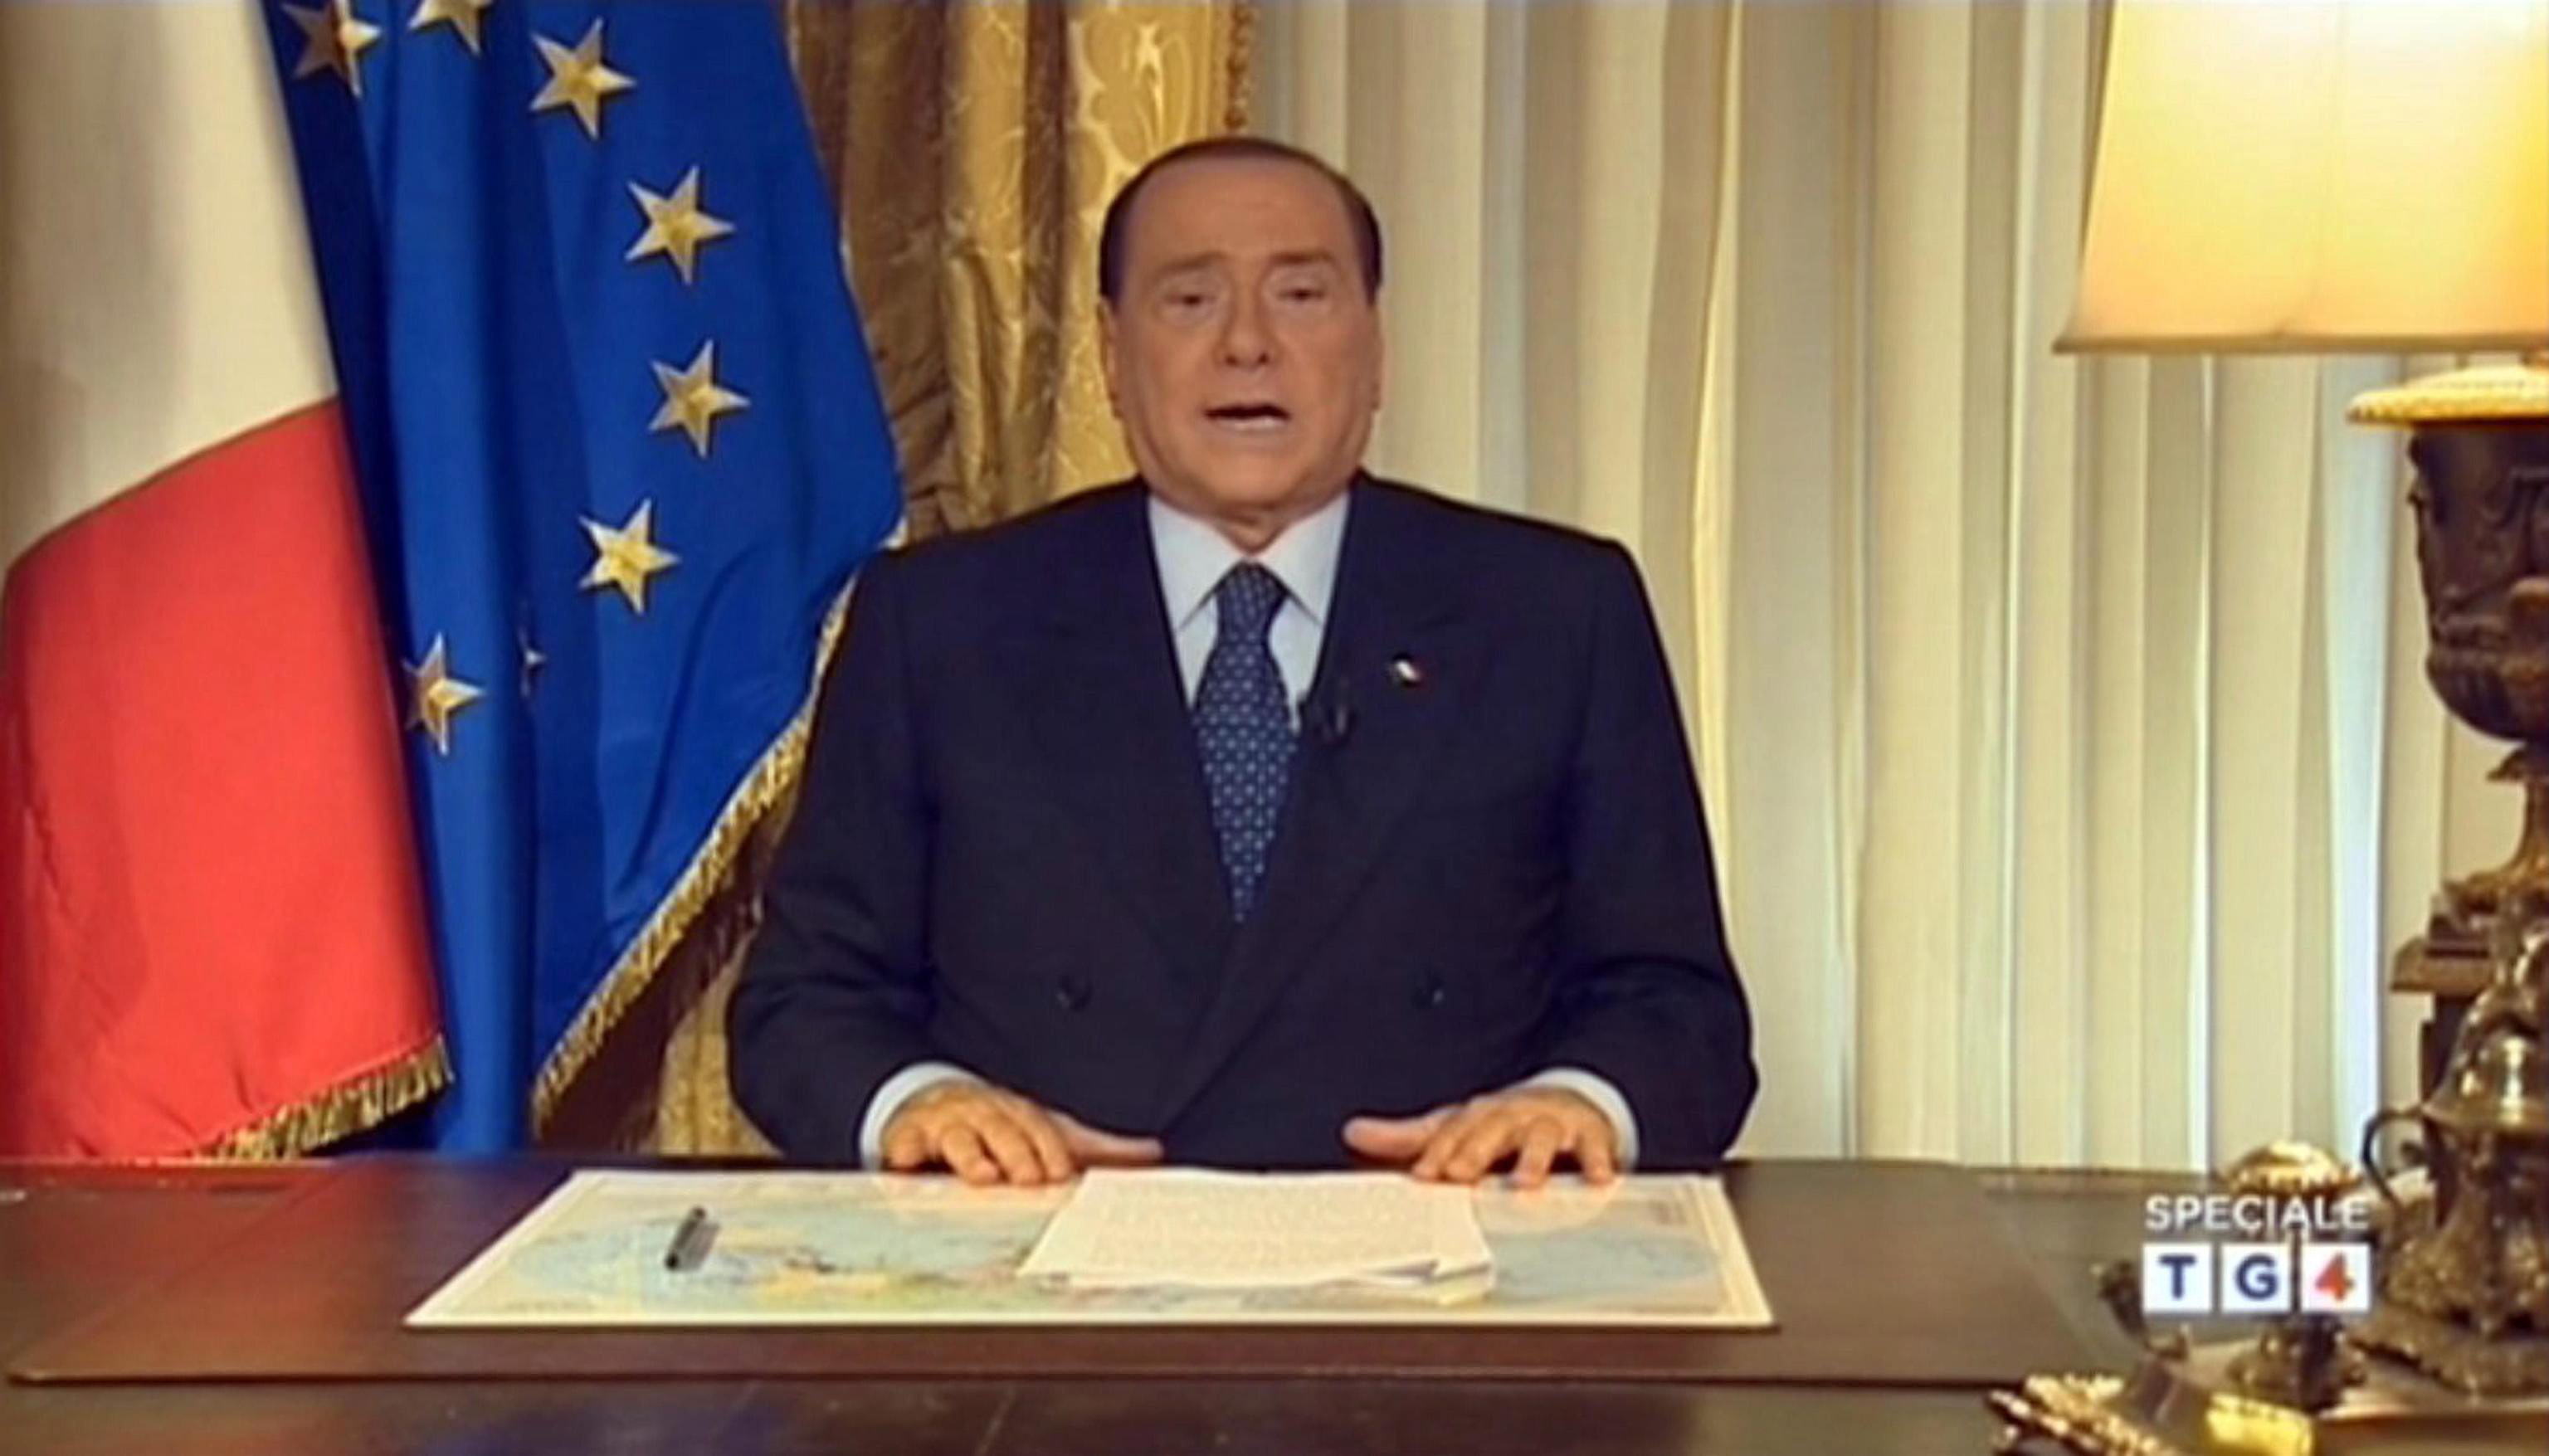 Former Prime Minister Silvio Berlusconi. Photo: EPA